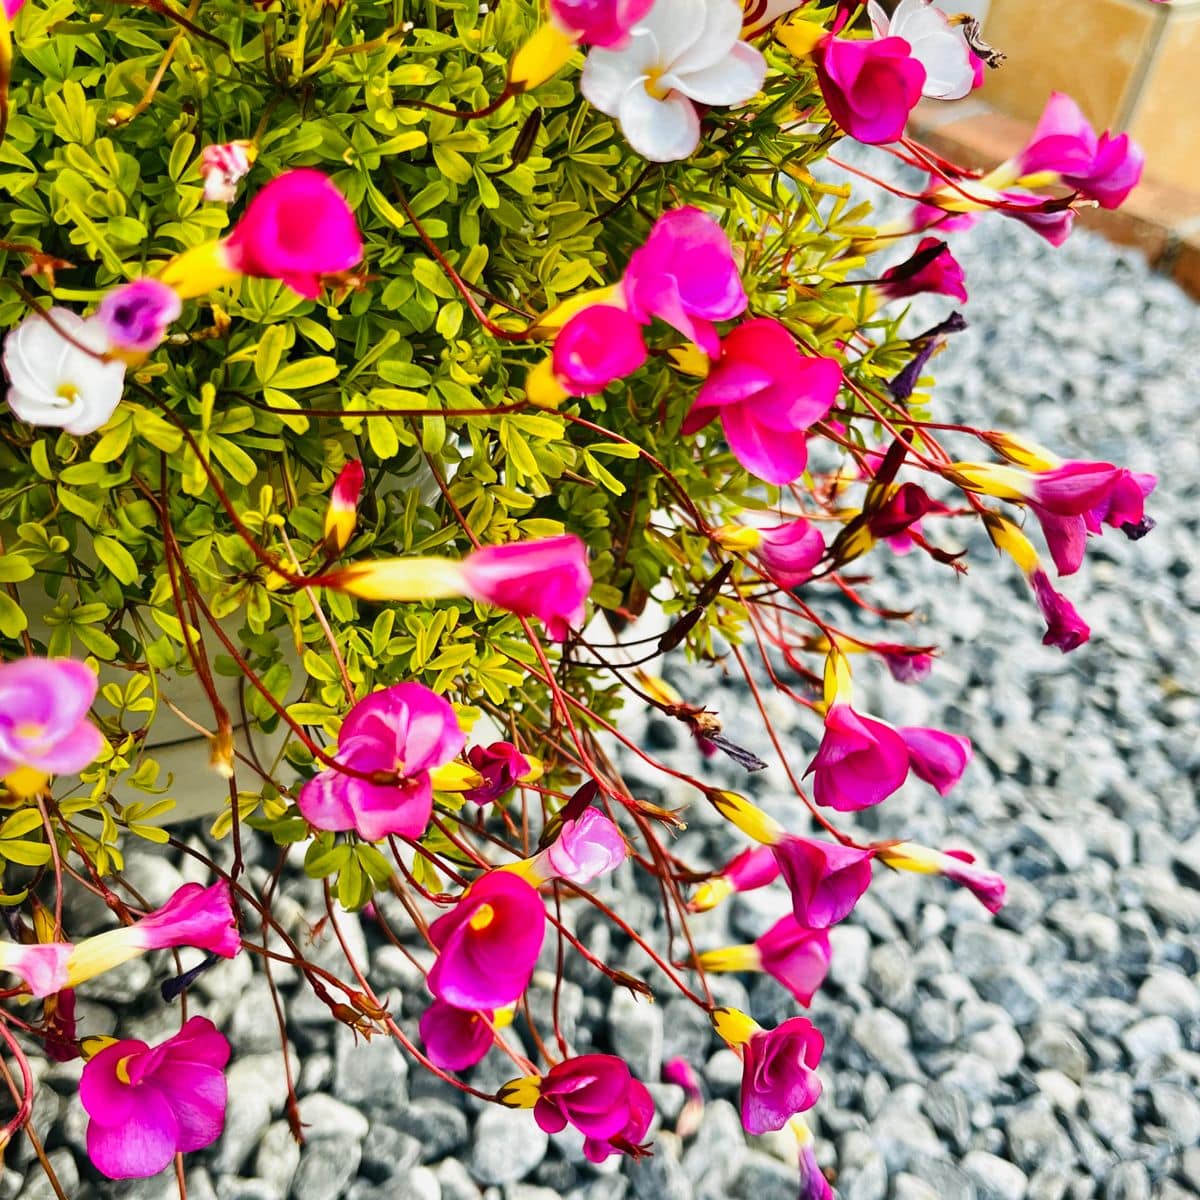 オキザリス 桃の輝き Oxalis 039 Momo N 庭に咲く花season19 のアルバム みんなの趣味の園芸